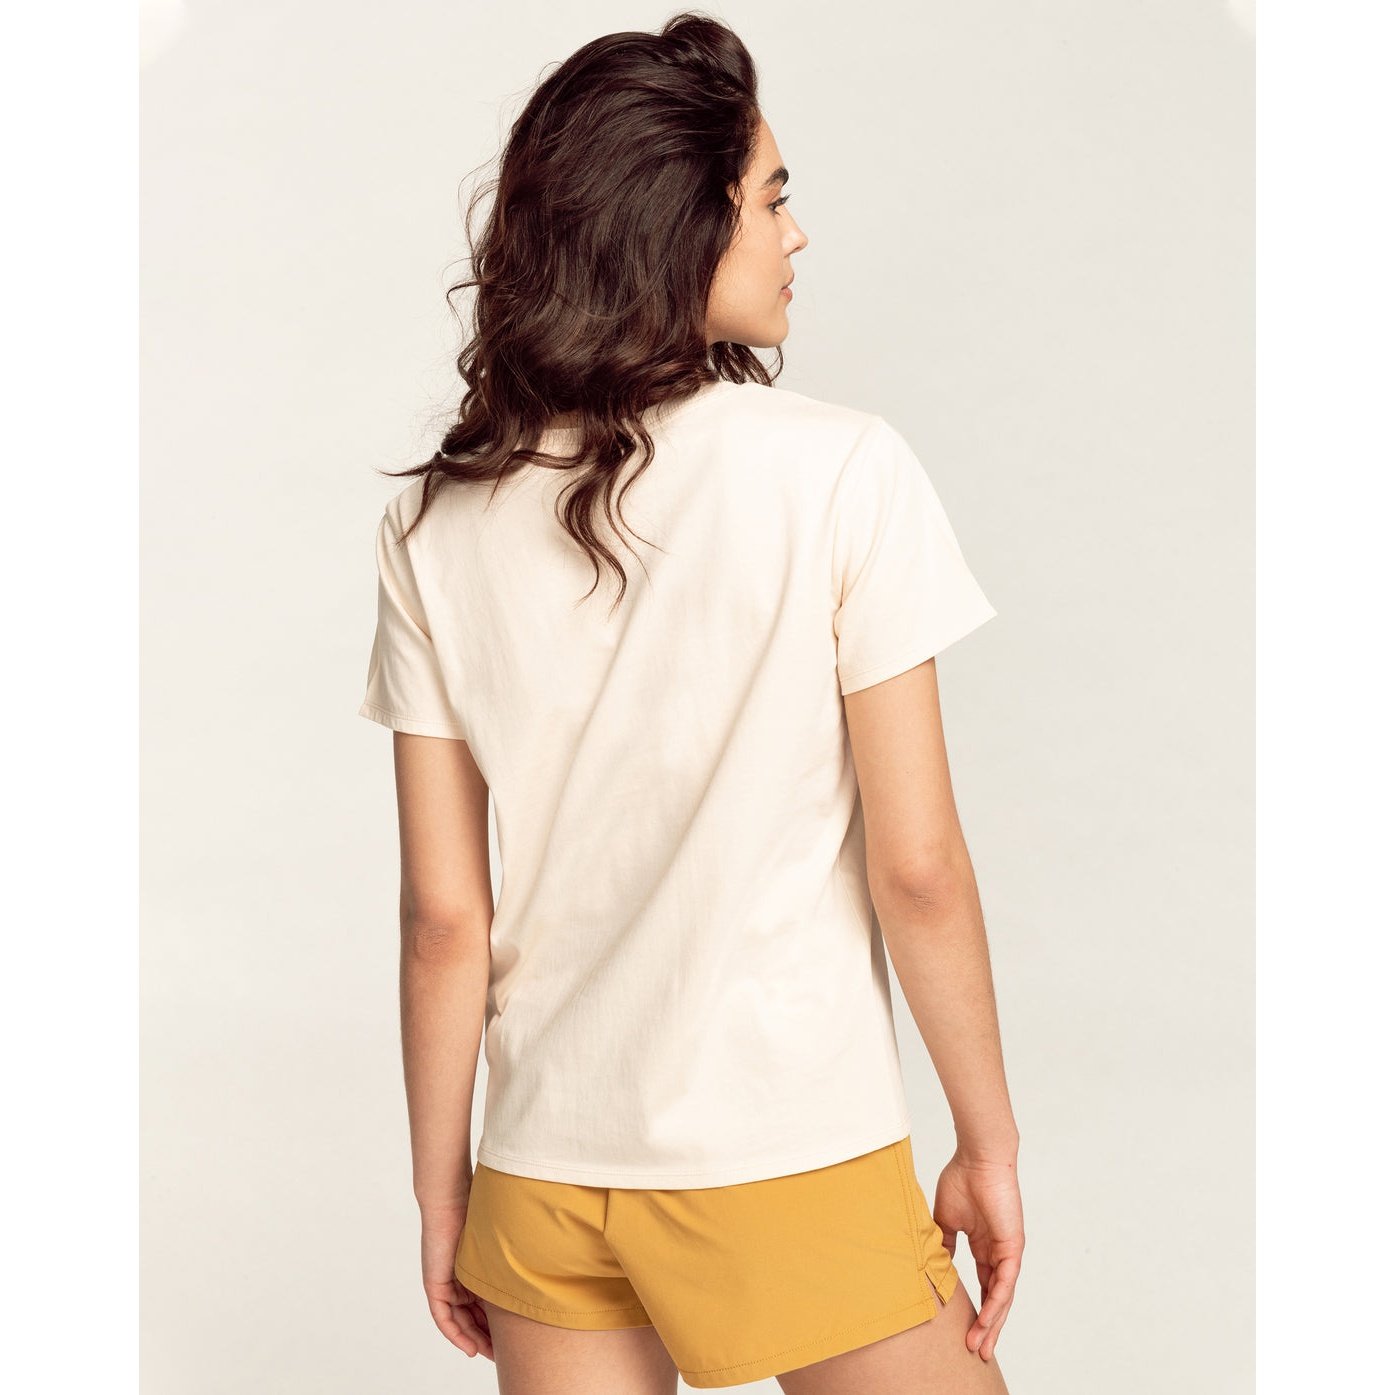 ADIV - Short Sleeve T-Shirt for Women